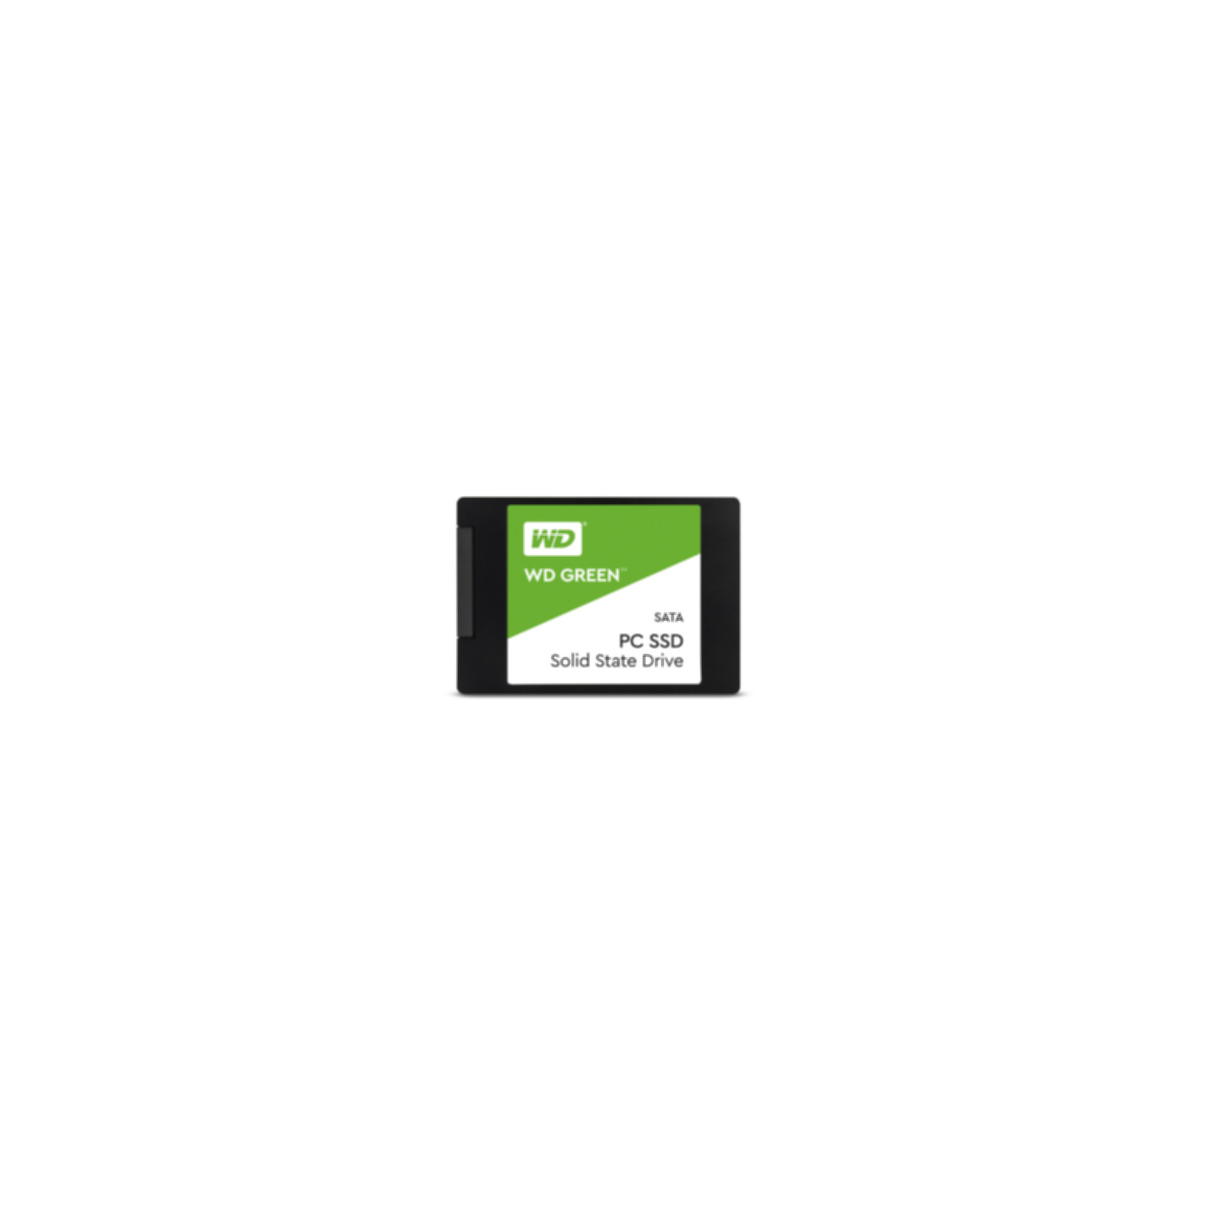 WD WESTERN intern GB, Green, 480 SSD, DIGITAL